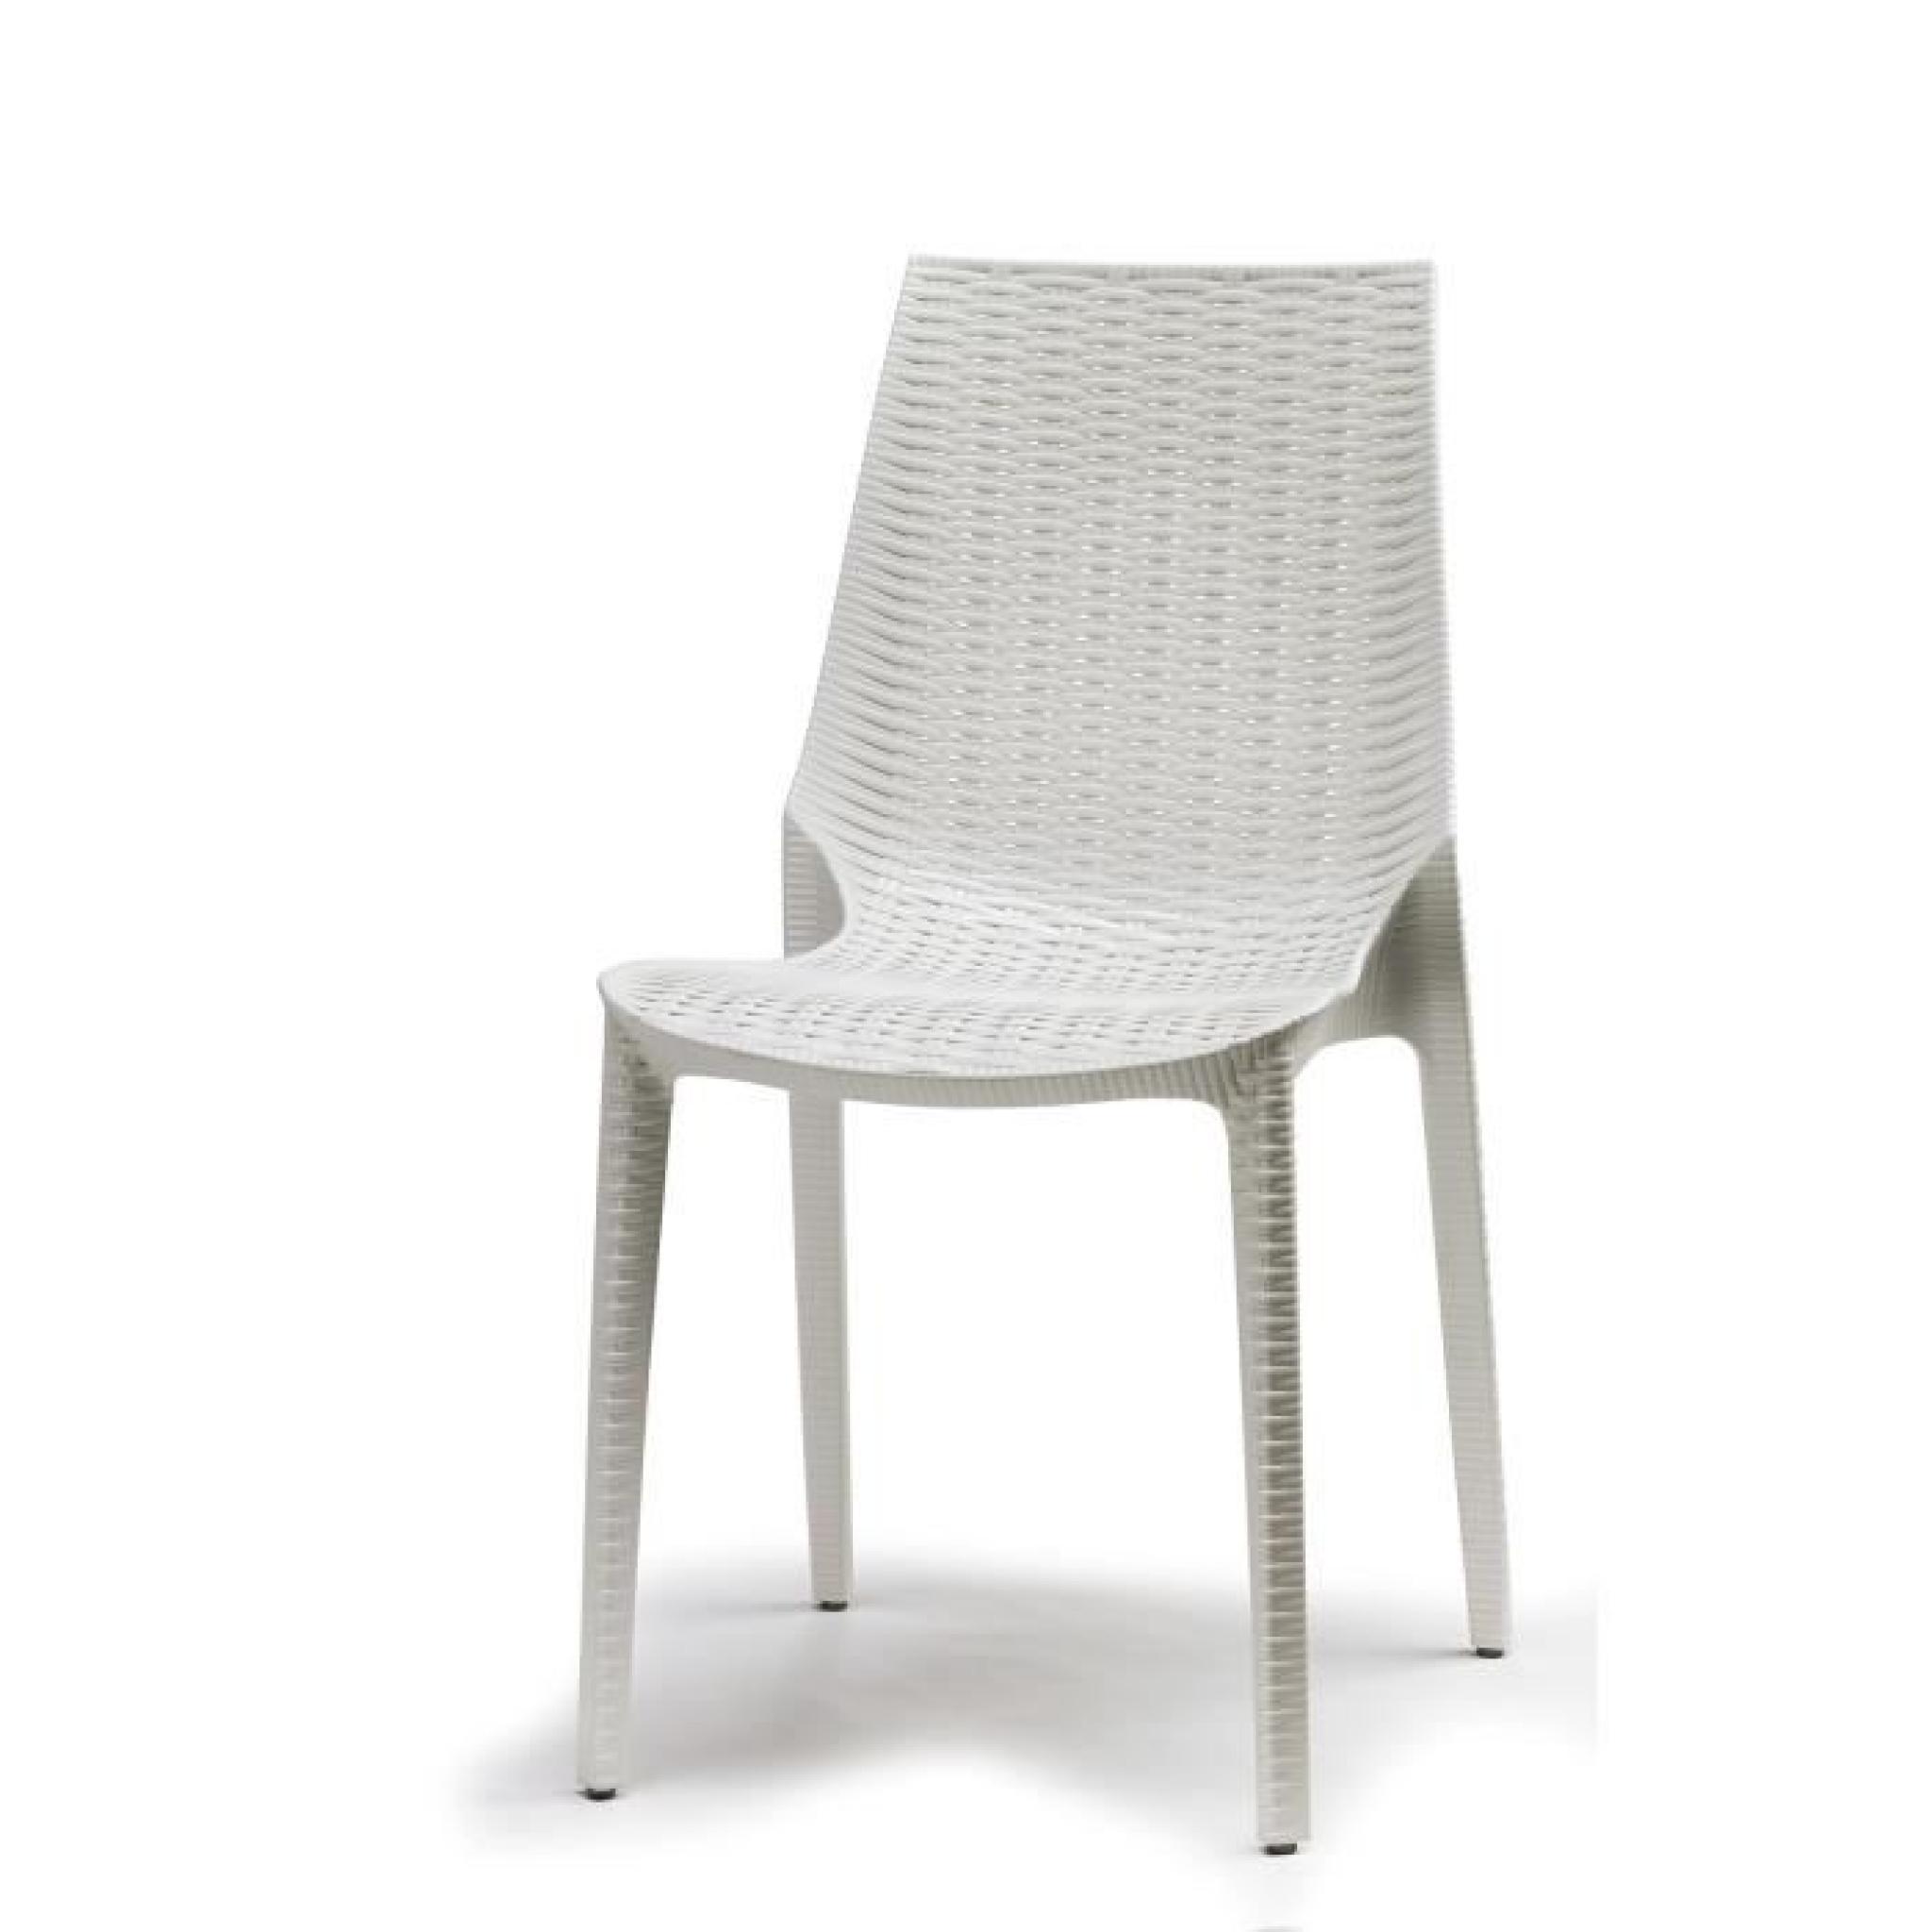 Chaise tissee blanche design - LUCREZIA blanche - deco